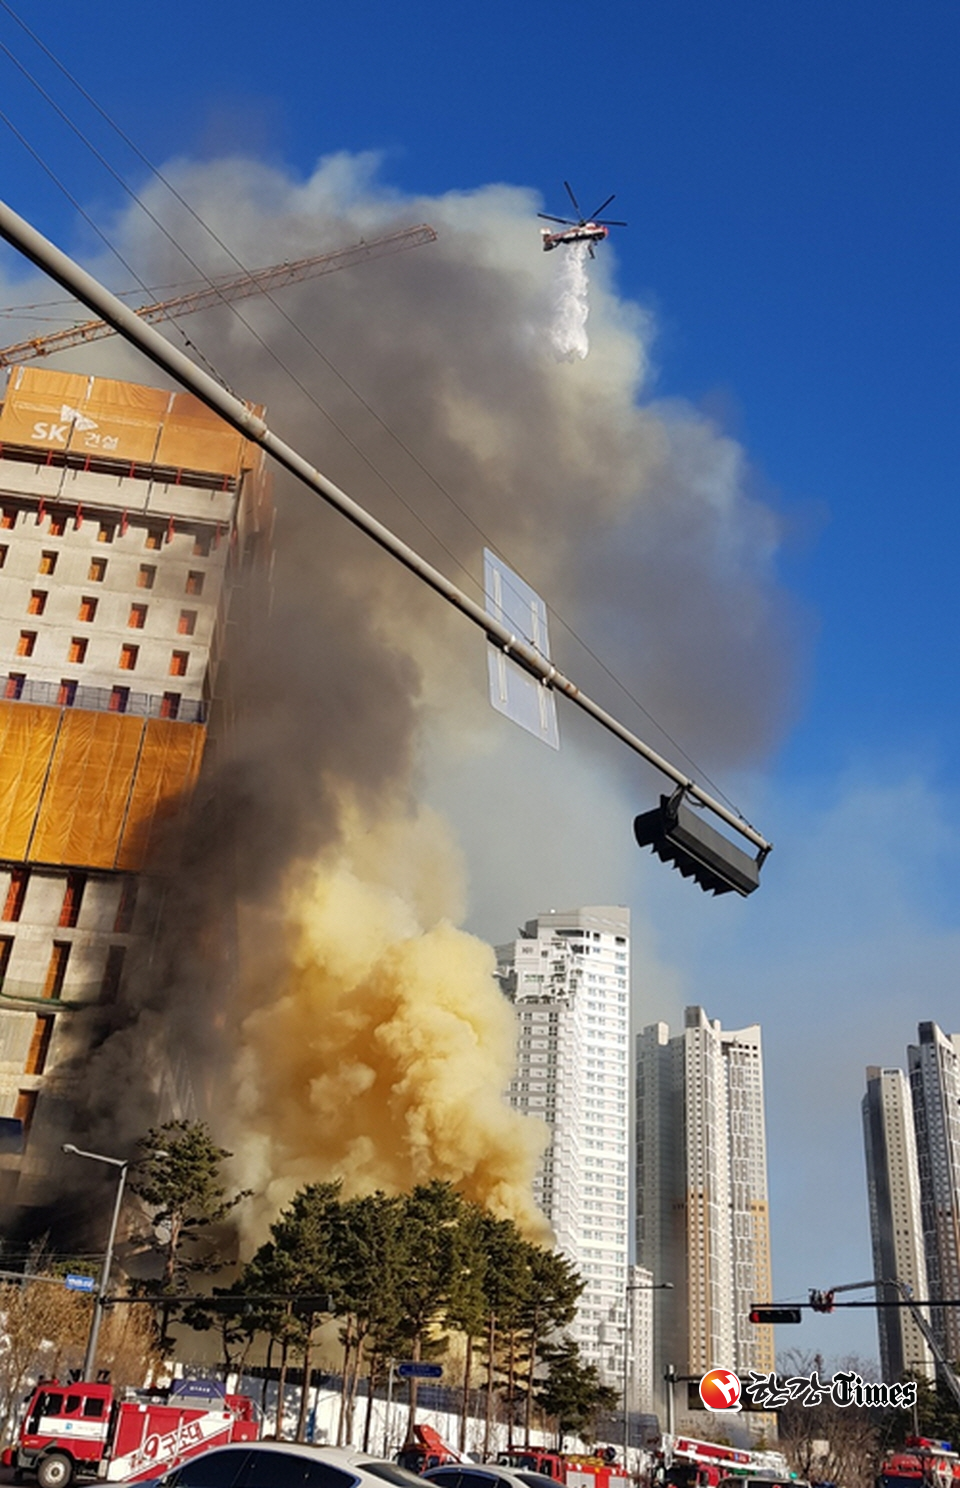 25일 오후 2시46분께 경기 수원시 광교신도시의 한 아파트 공사현장에서 불이 났다. 소방당국은 대응 2단계를 발령, 화재를 진압하고 있다.